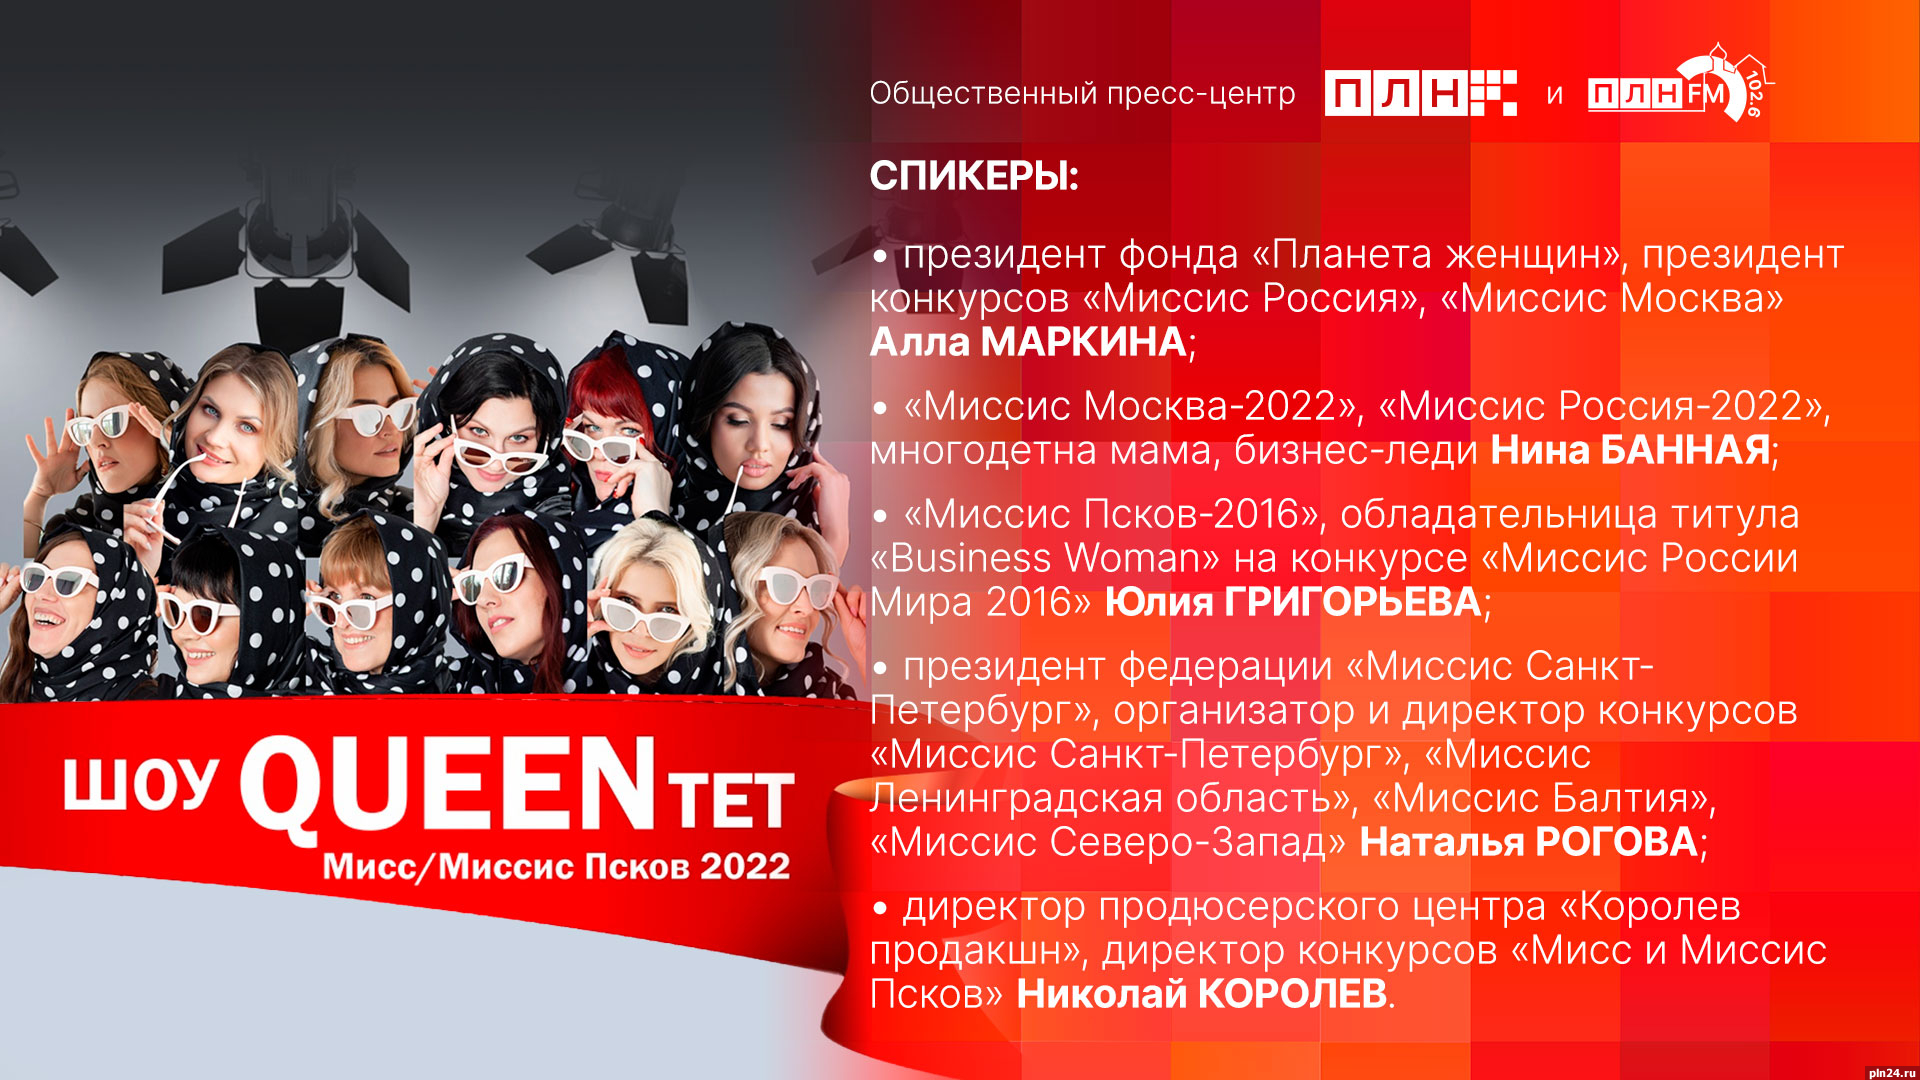 Начинается видеотрансляция брифинга о финале фестиваля «Мисс и Миссис Псков 2022»